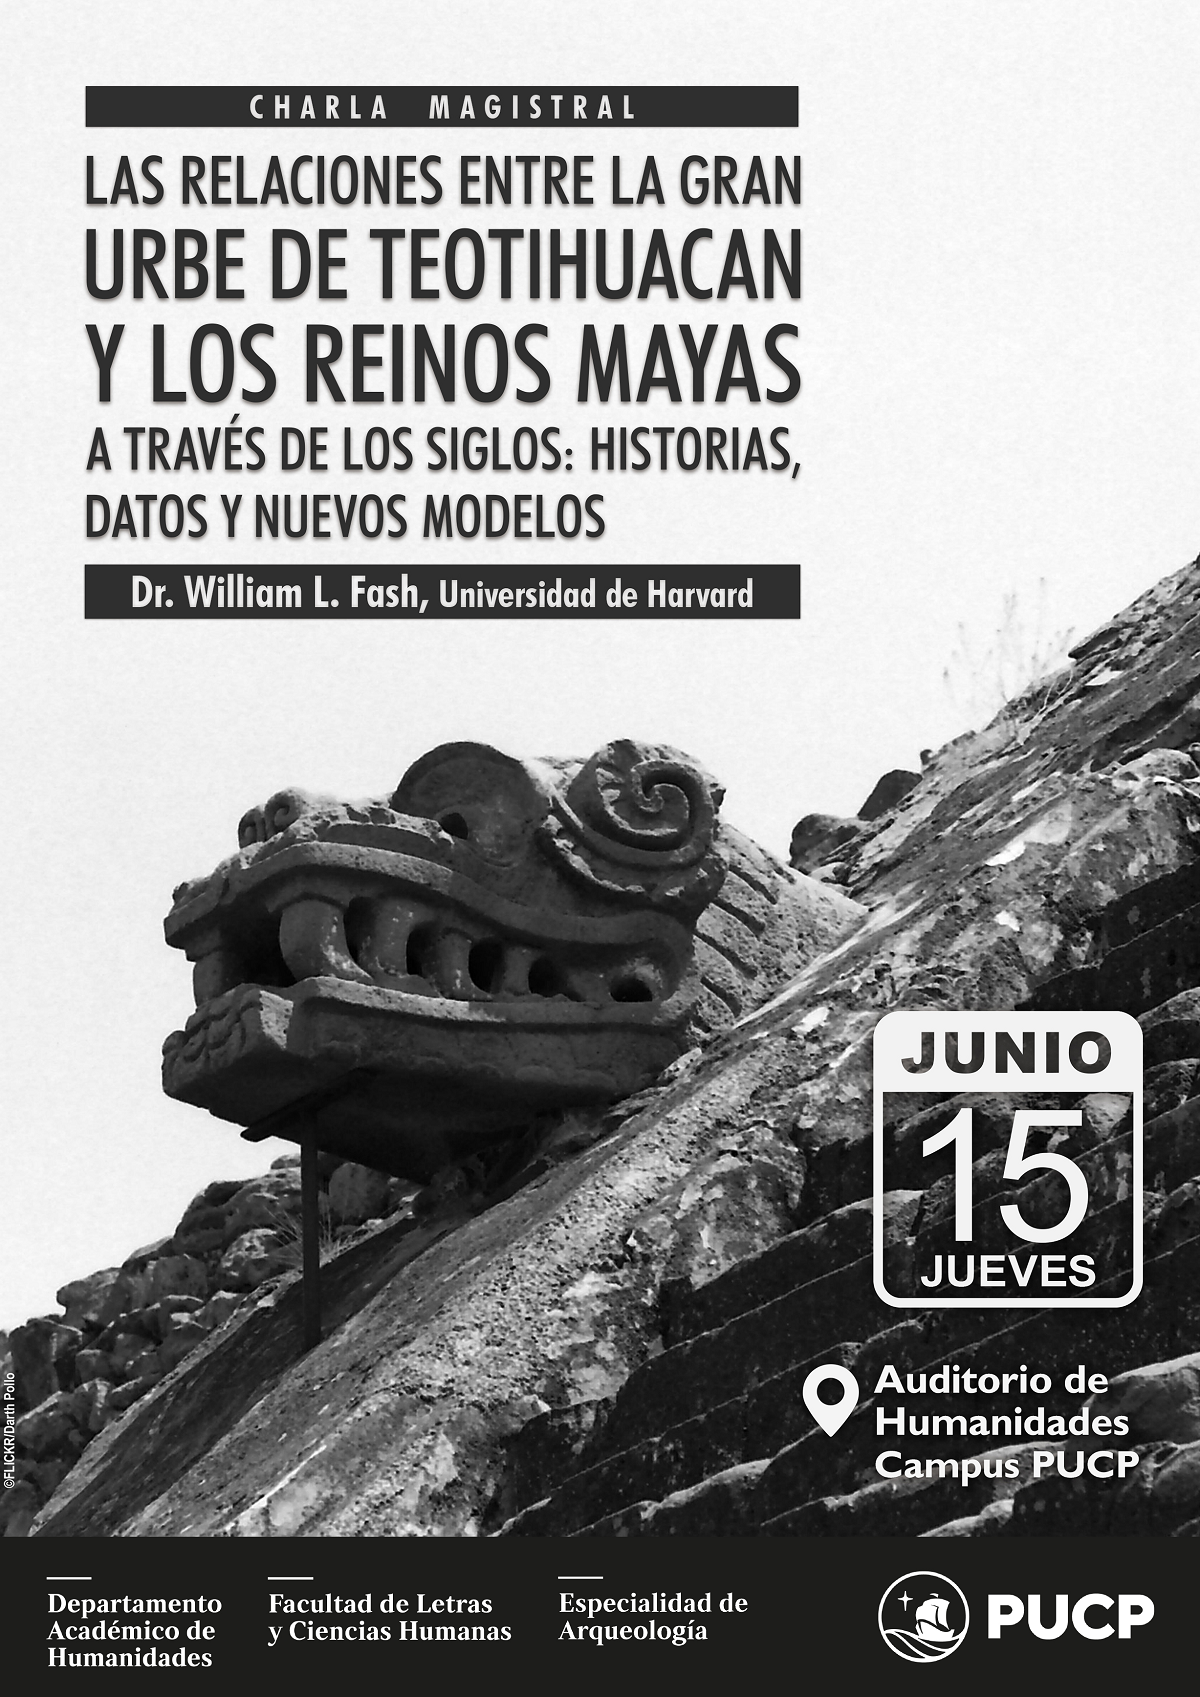 Charla | Las relaciones entre la gran urbe de Teotihuacan y los reinos Mayas a través de los siglos: Historias, datos y modelos nuevos